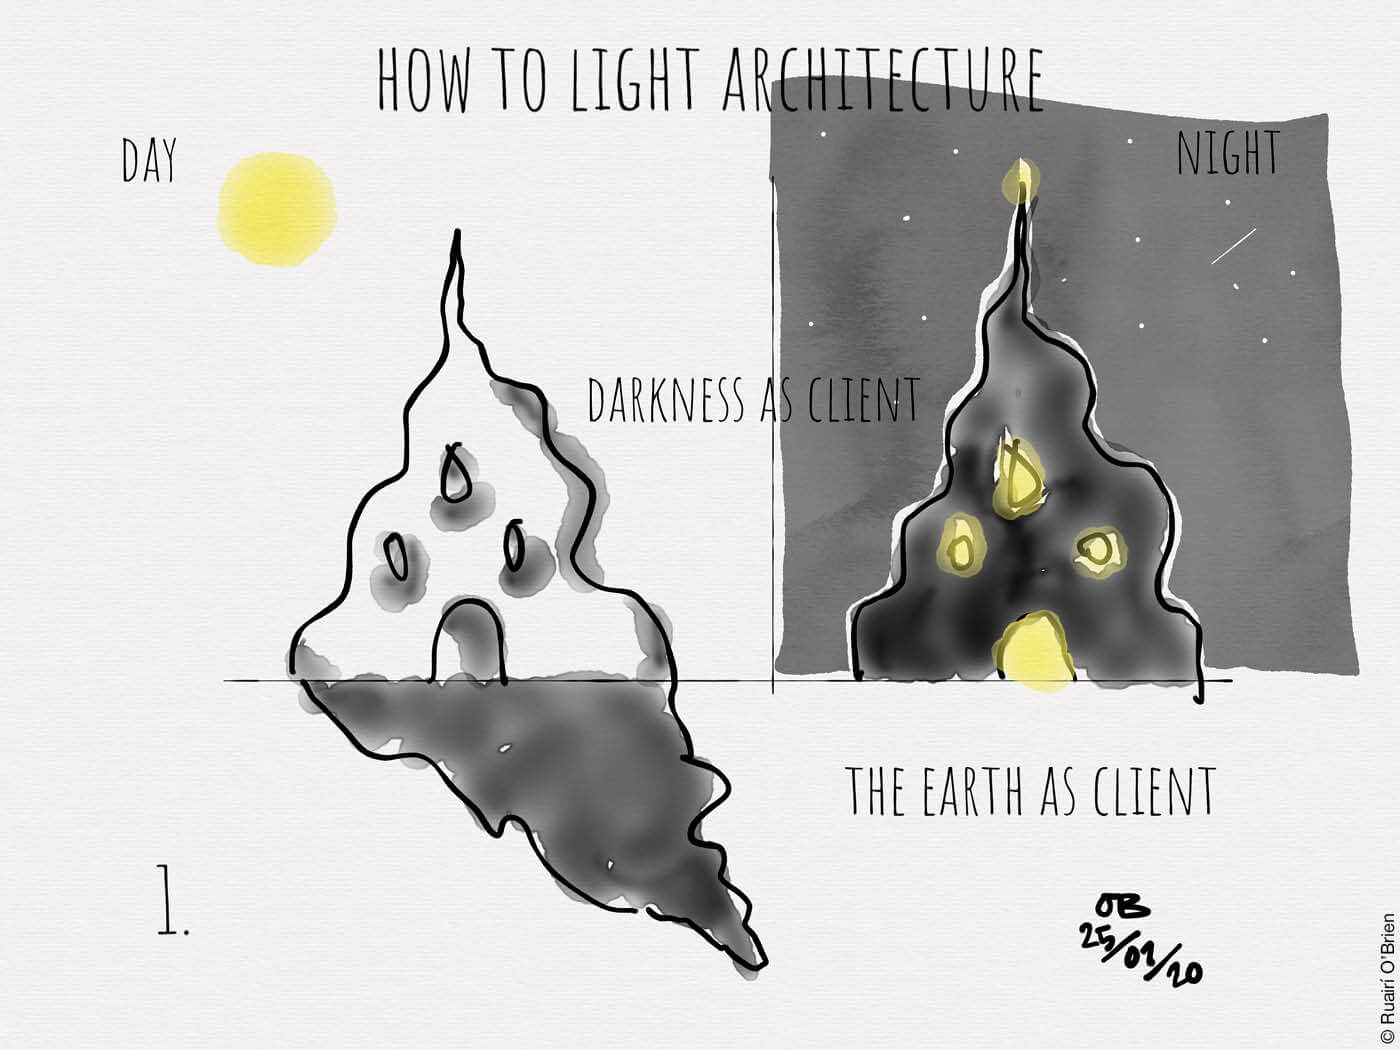 Skizze zur Lichtarchitektur bei Tag und bei Nacht